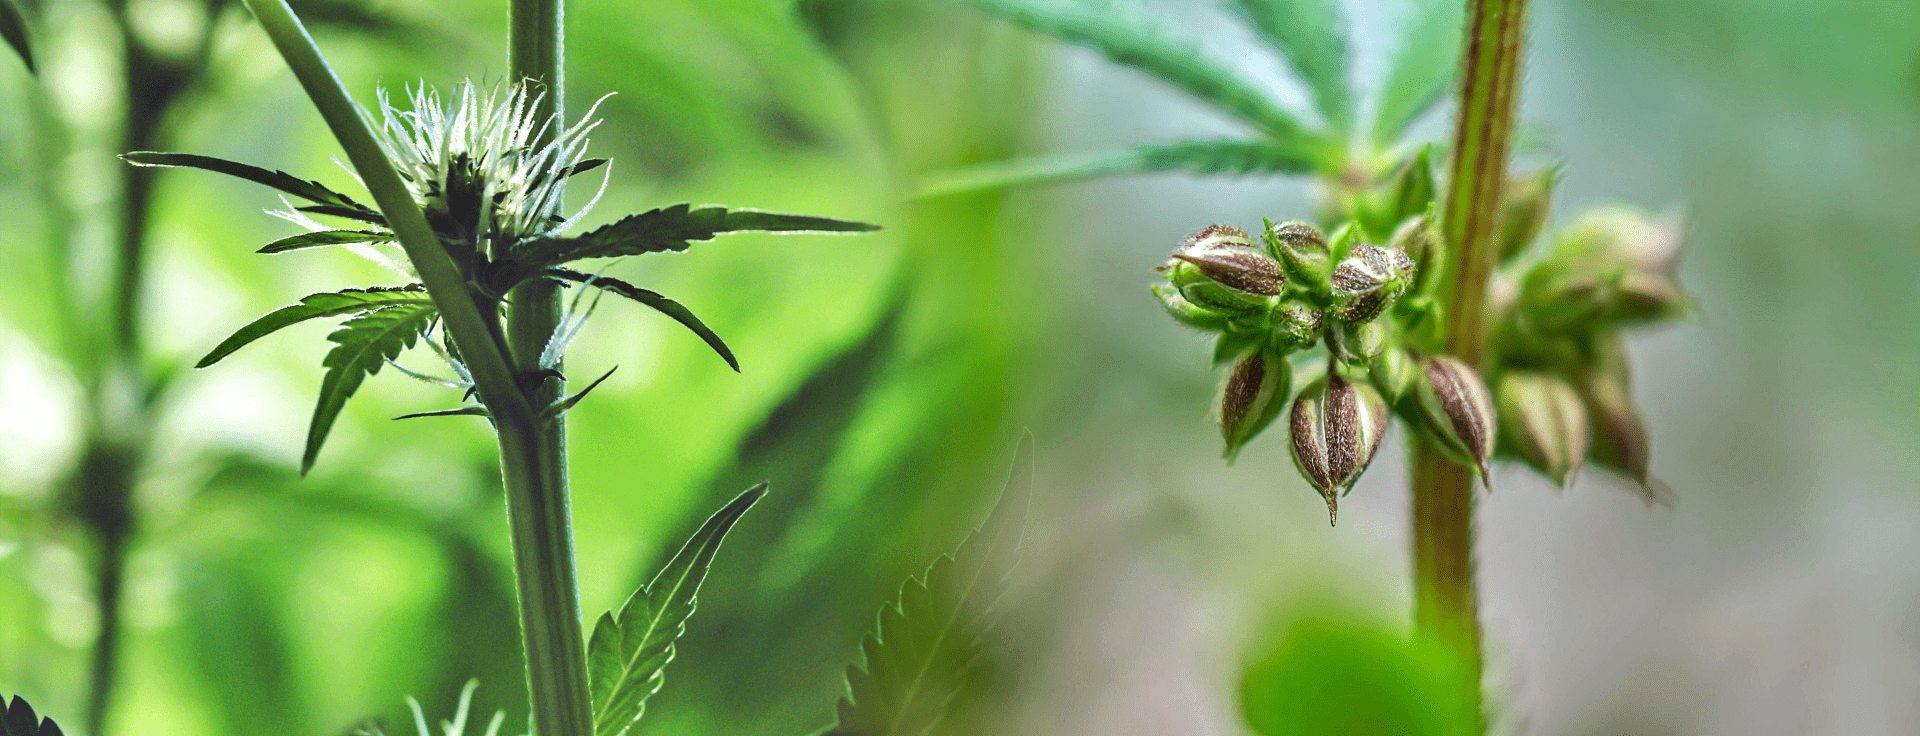 Hemp Breeding - Male & Female Hemp Plants